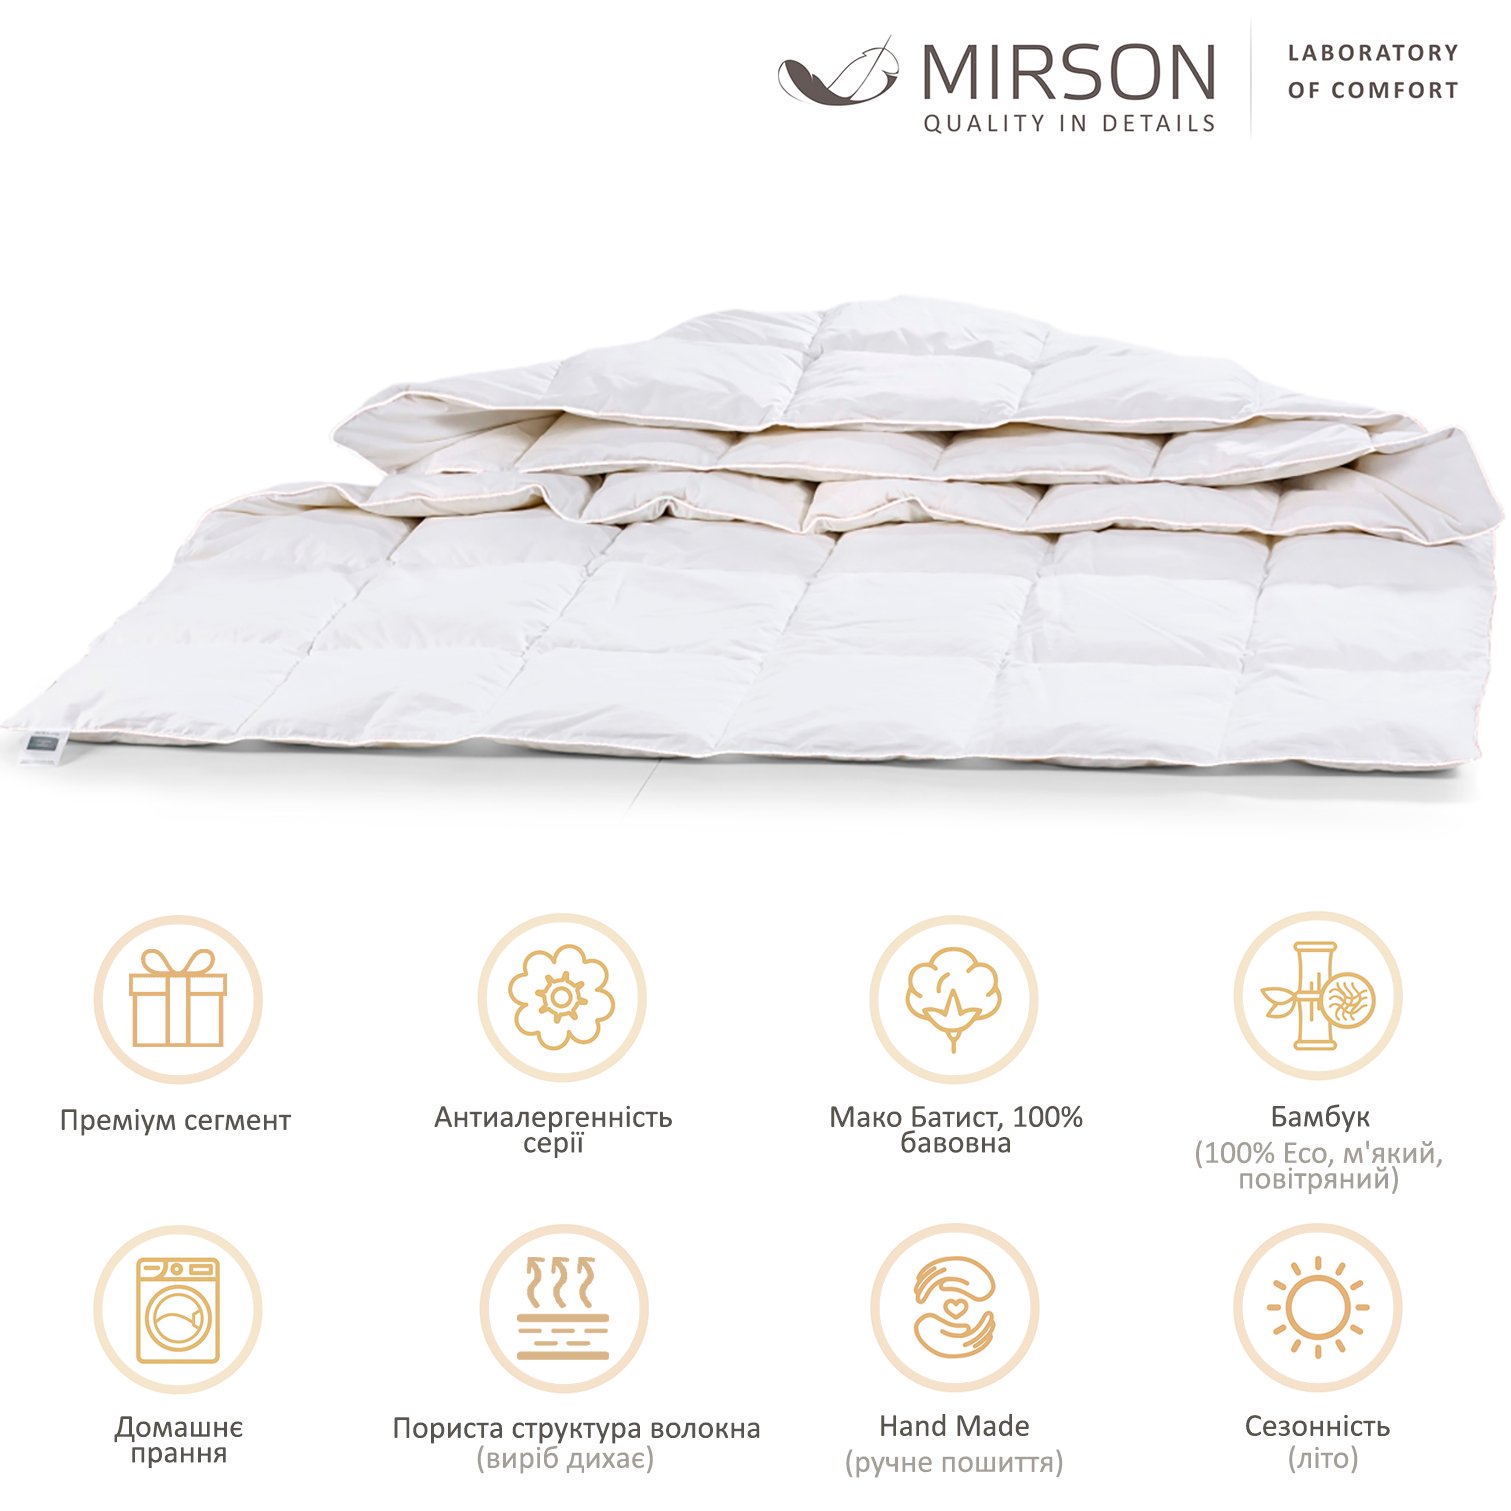 Одеяло бамбуковое MirSon Luxury Exclusive №1375, летнее, 140x205 см, белое - фото 6